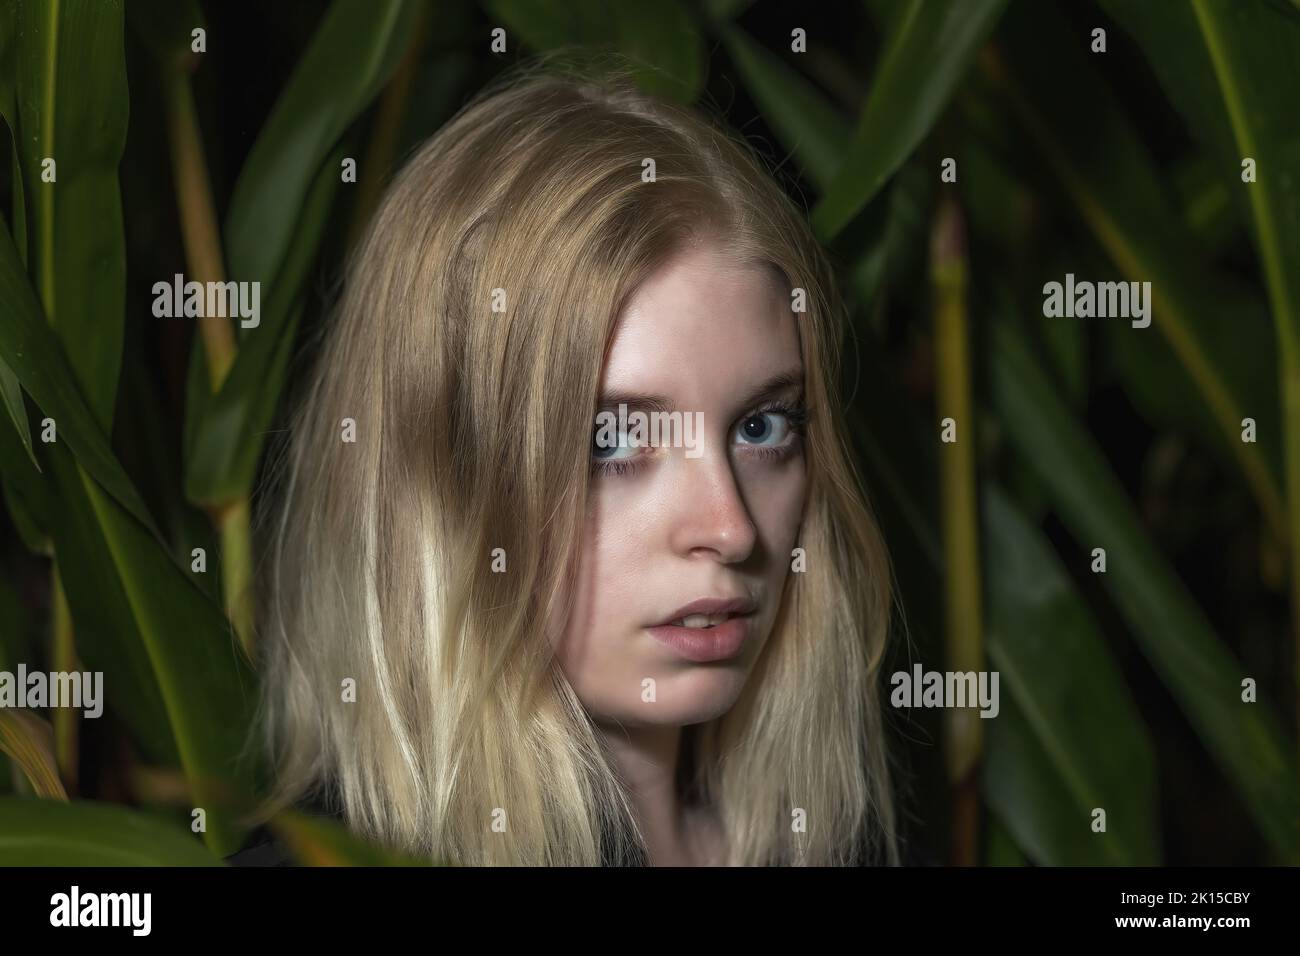 La jeune femme blonde pose parmi les plantes vertes. Horizontalement. Banque D'Images